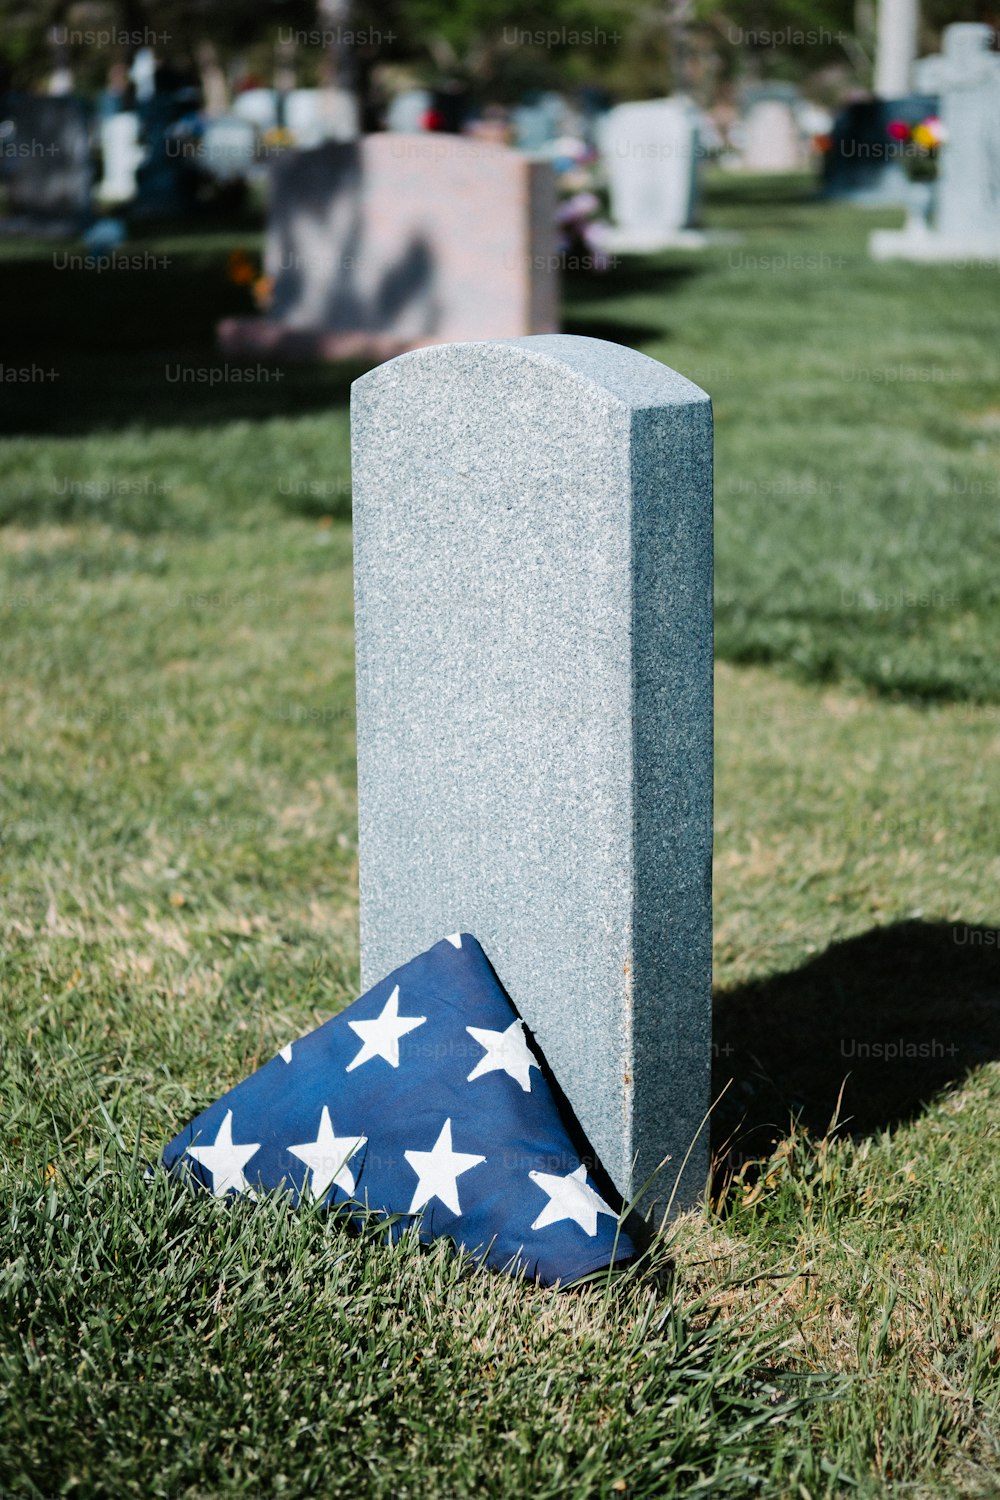 Una bandiera che giace sulla cima di una tomba nell'erba